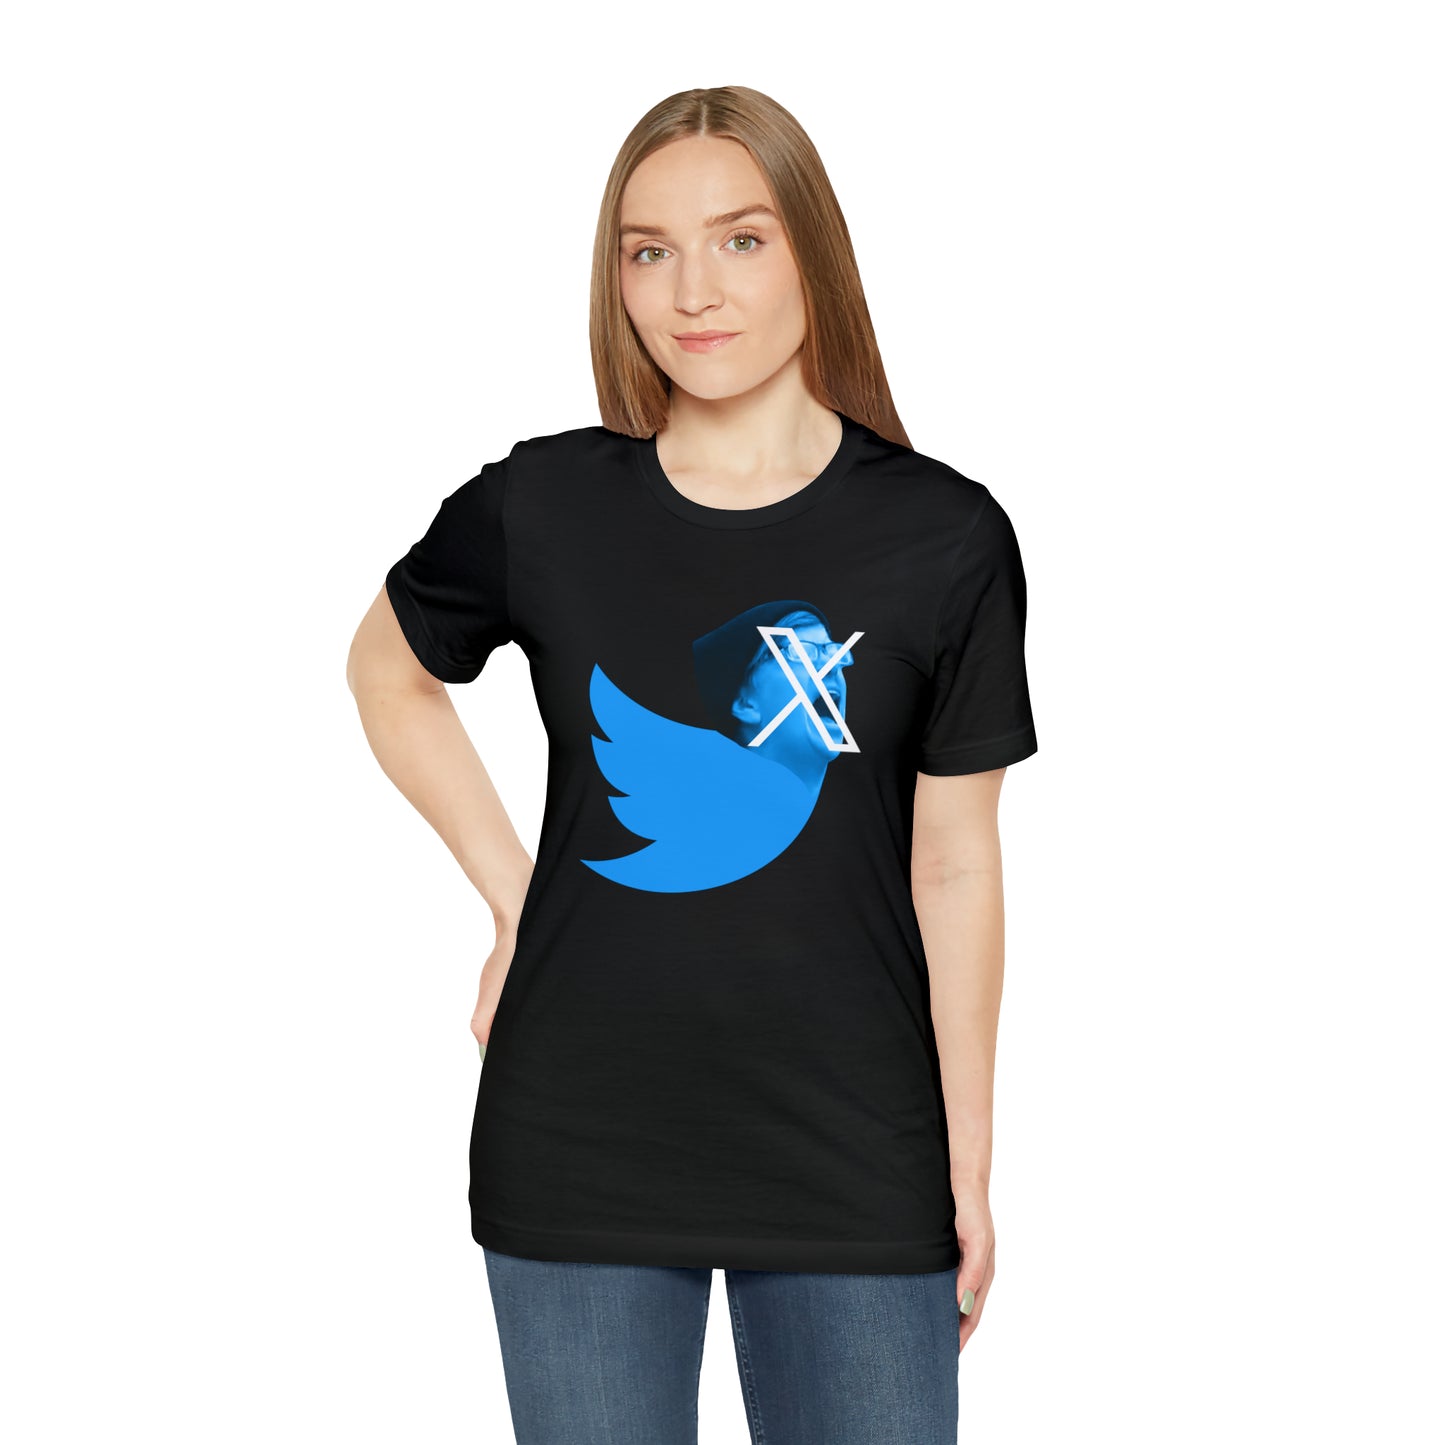 Funny Twitter X Logo Shirt - Elon Musk New Twitter X Logo - Cotton T-shirt